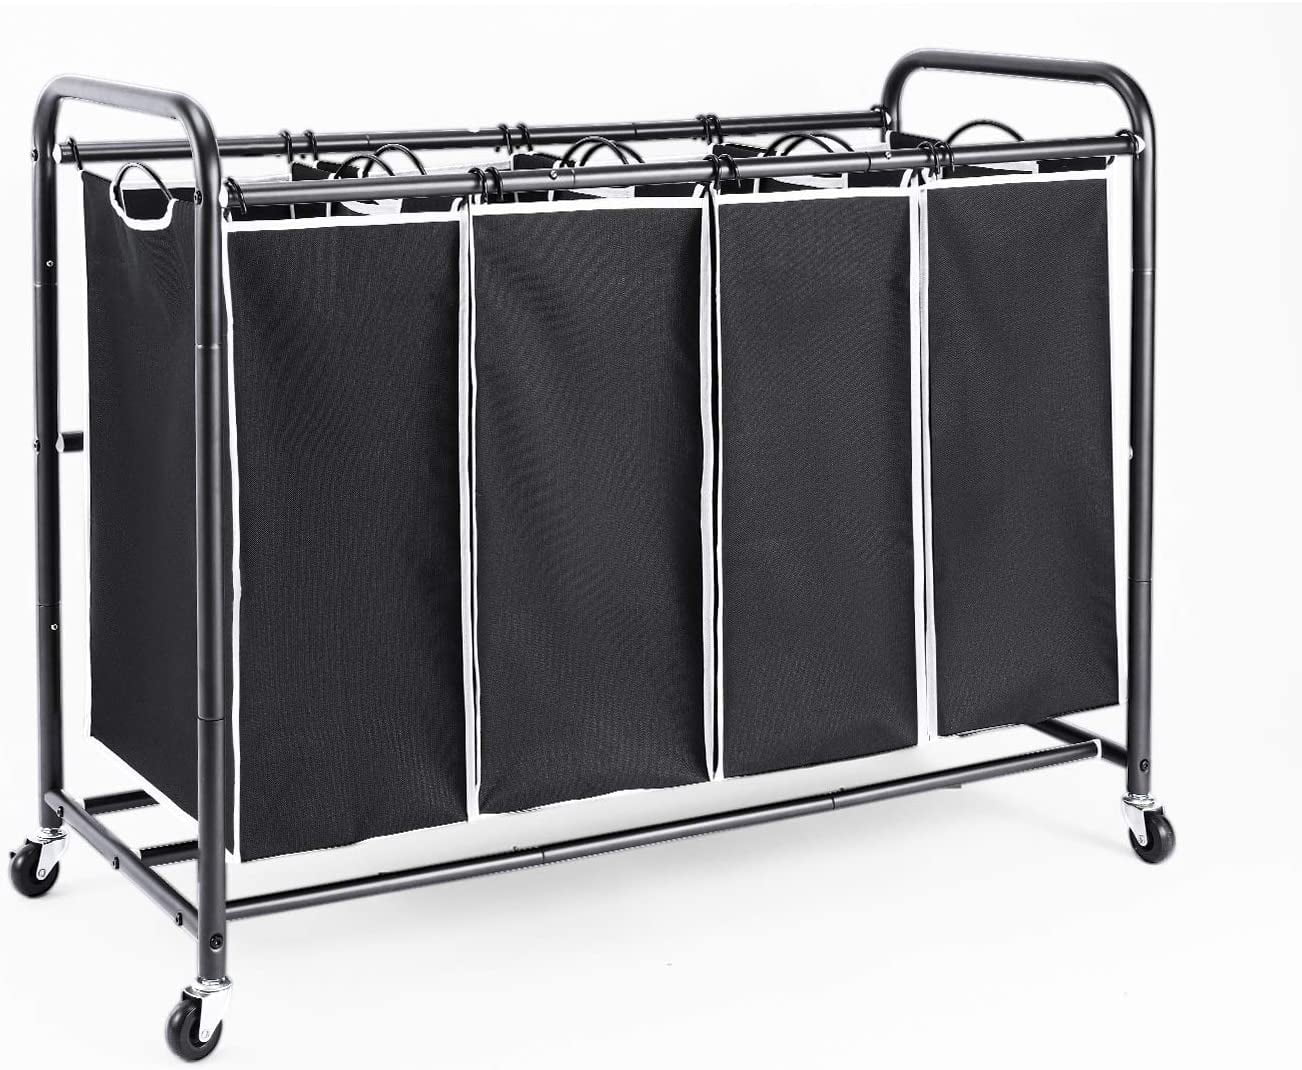 Multiple 4 Section Laundry Sorter Hamper Cart Heavy Duty Rolling Lockable Wheels